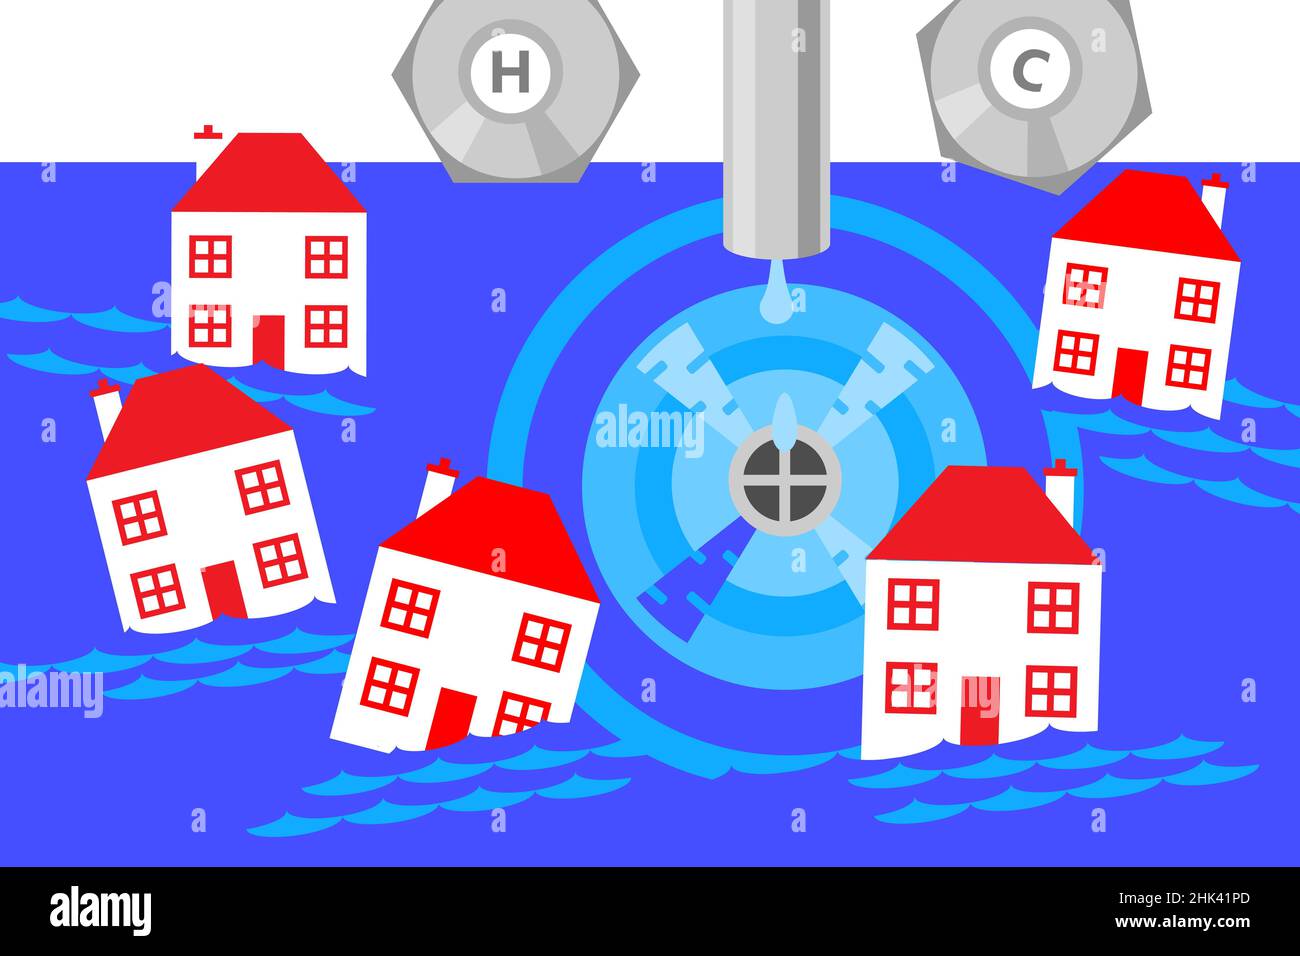 Un'illustrazione di un lavandino che viene drenato e molte piccole case che vengono aspirate nel vortice creato dal foro del tappo. Foto Stock